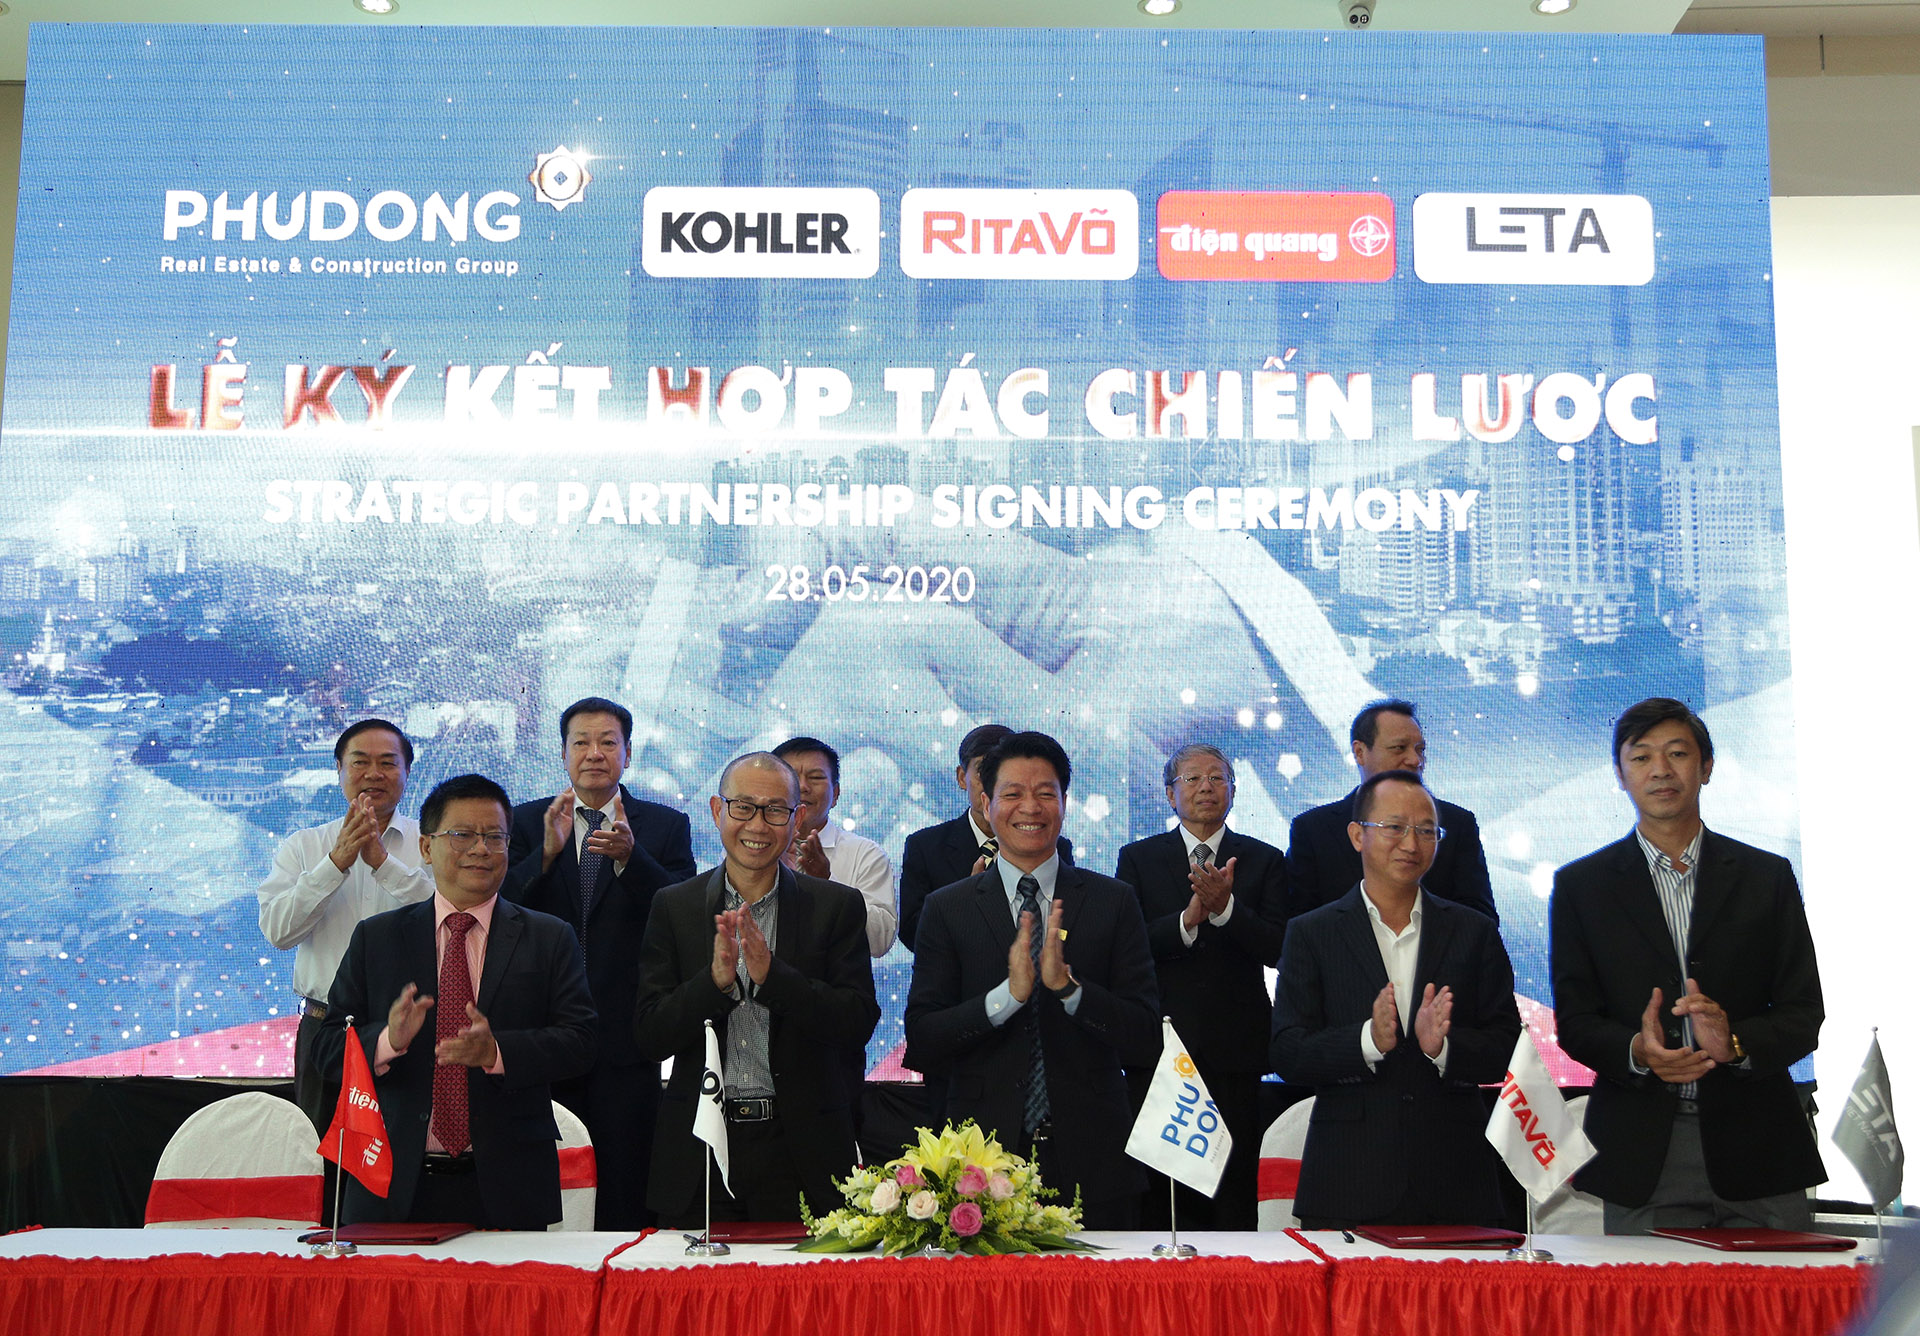 Phú Đông Group ký kết cùng các đối tác: Kohler, RitaVo, Điện Quang, Leta Việt Nam